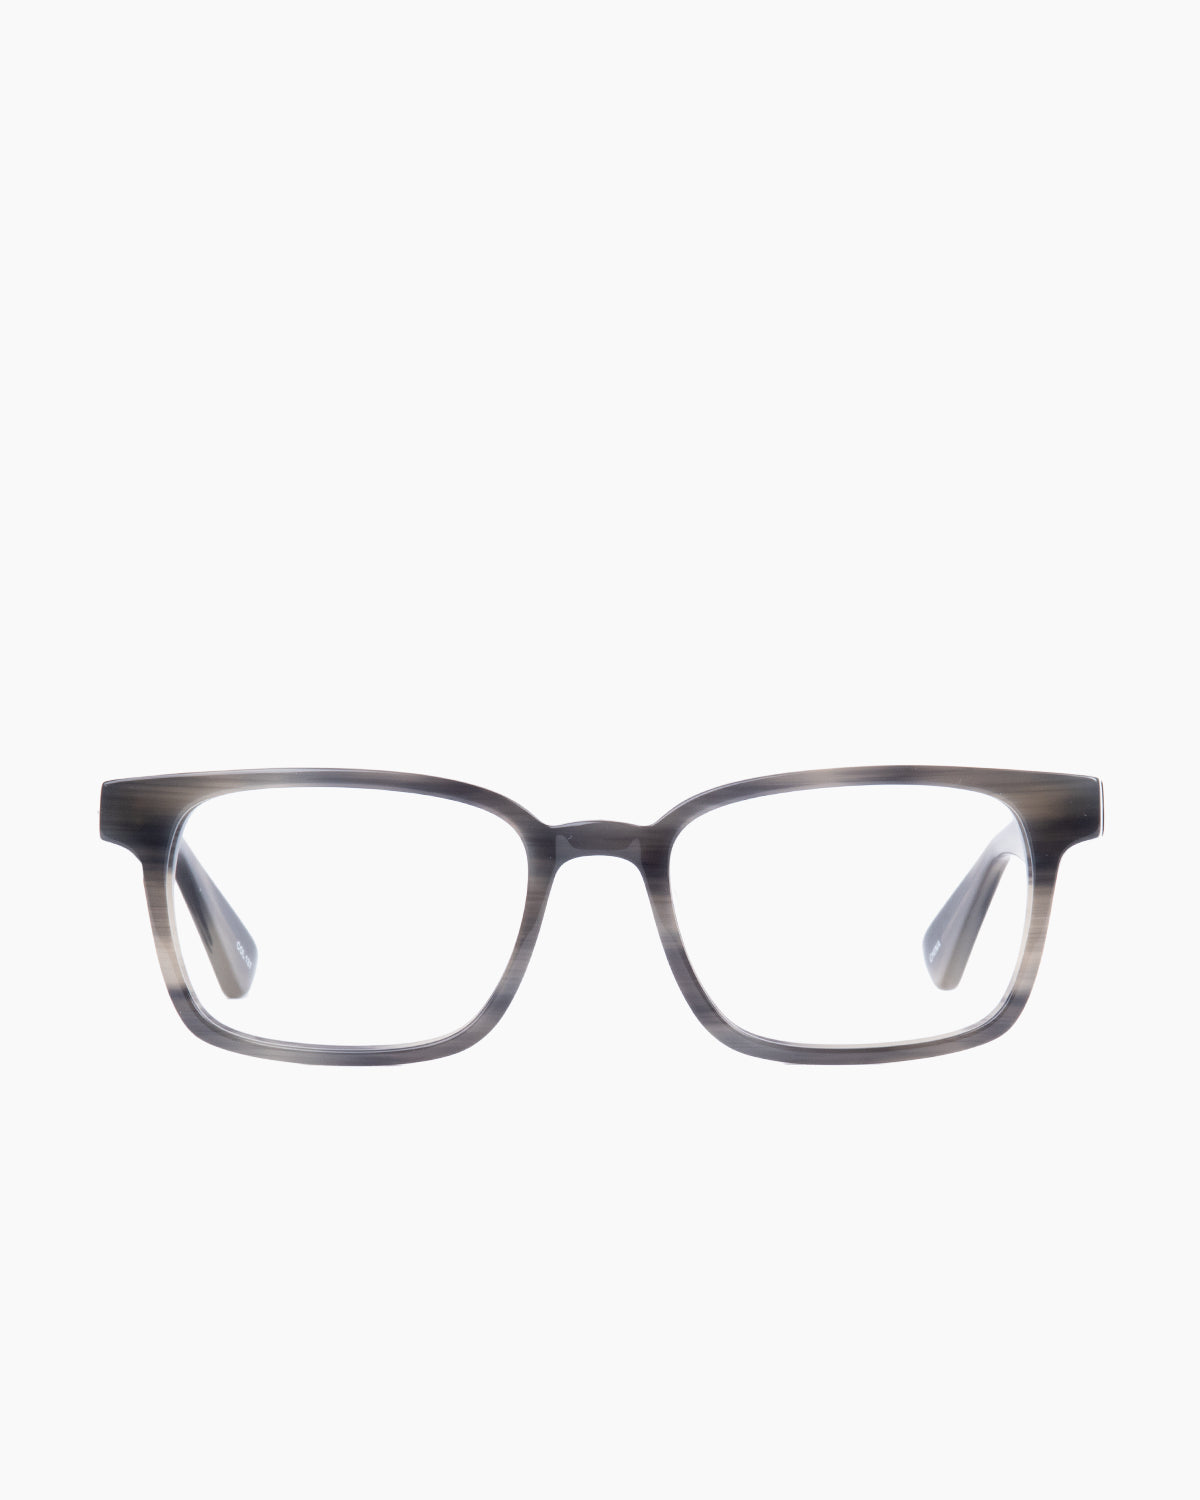 Evolve - Russell - 137 | glasses bar